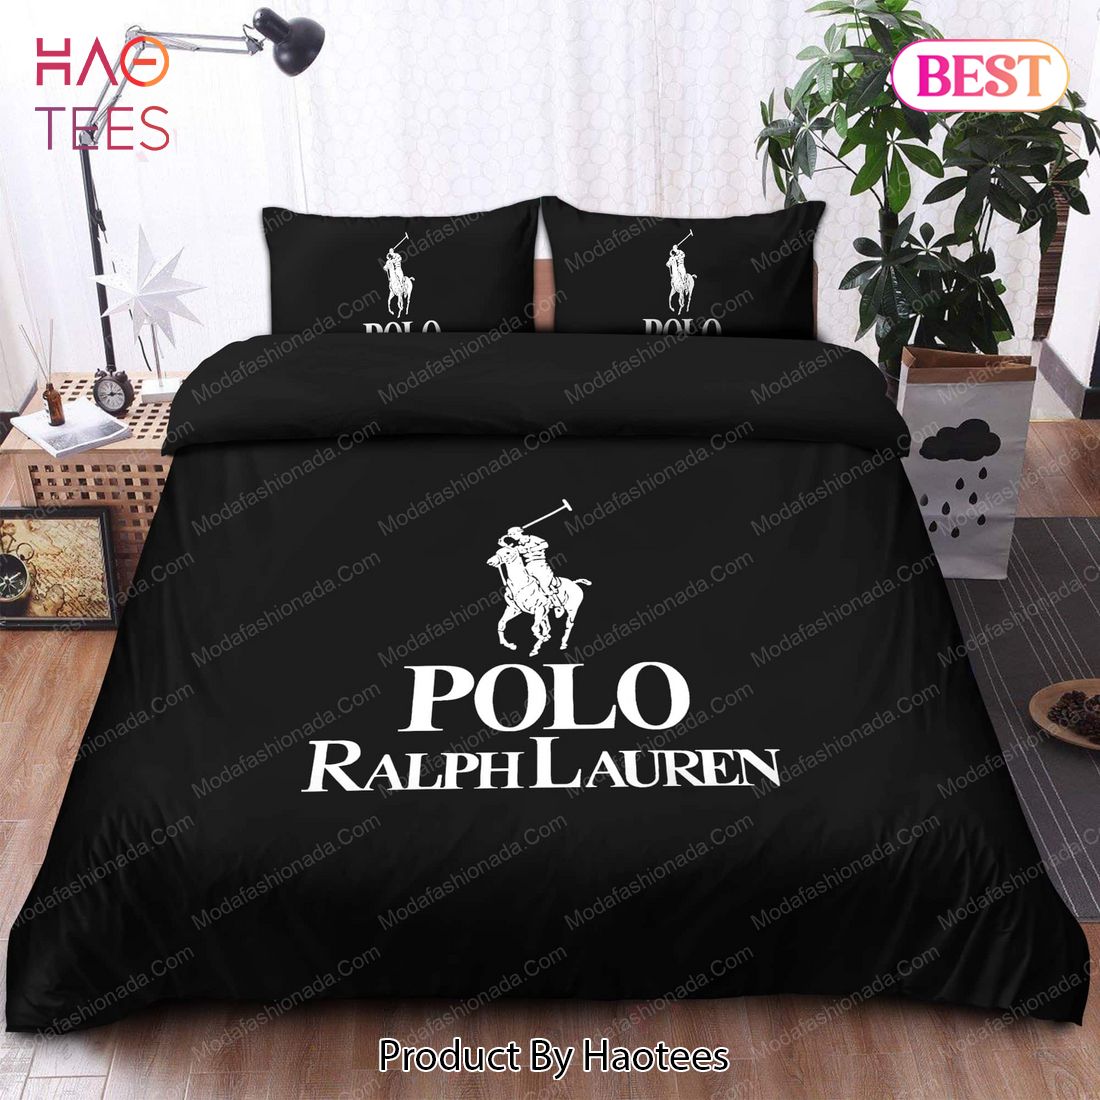 Buy Ralph Lauren Polo Bedding Sets Bed Sets, Bedroom Sets, Comforter Sets,  Duvet Cover, Bedspread